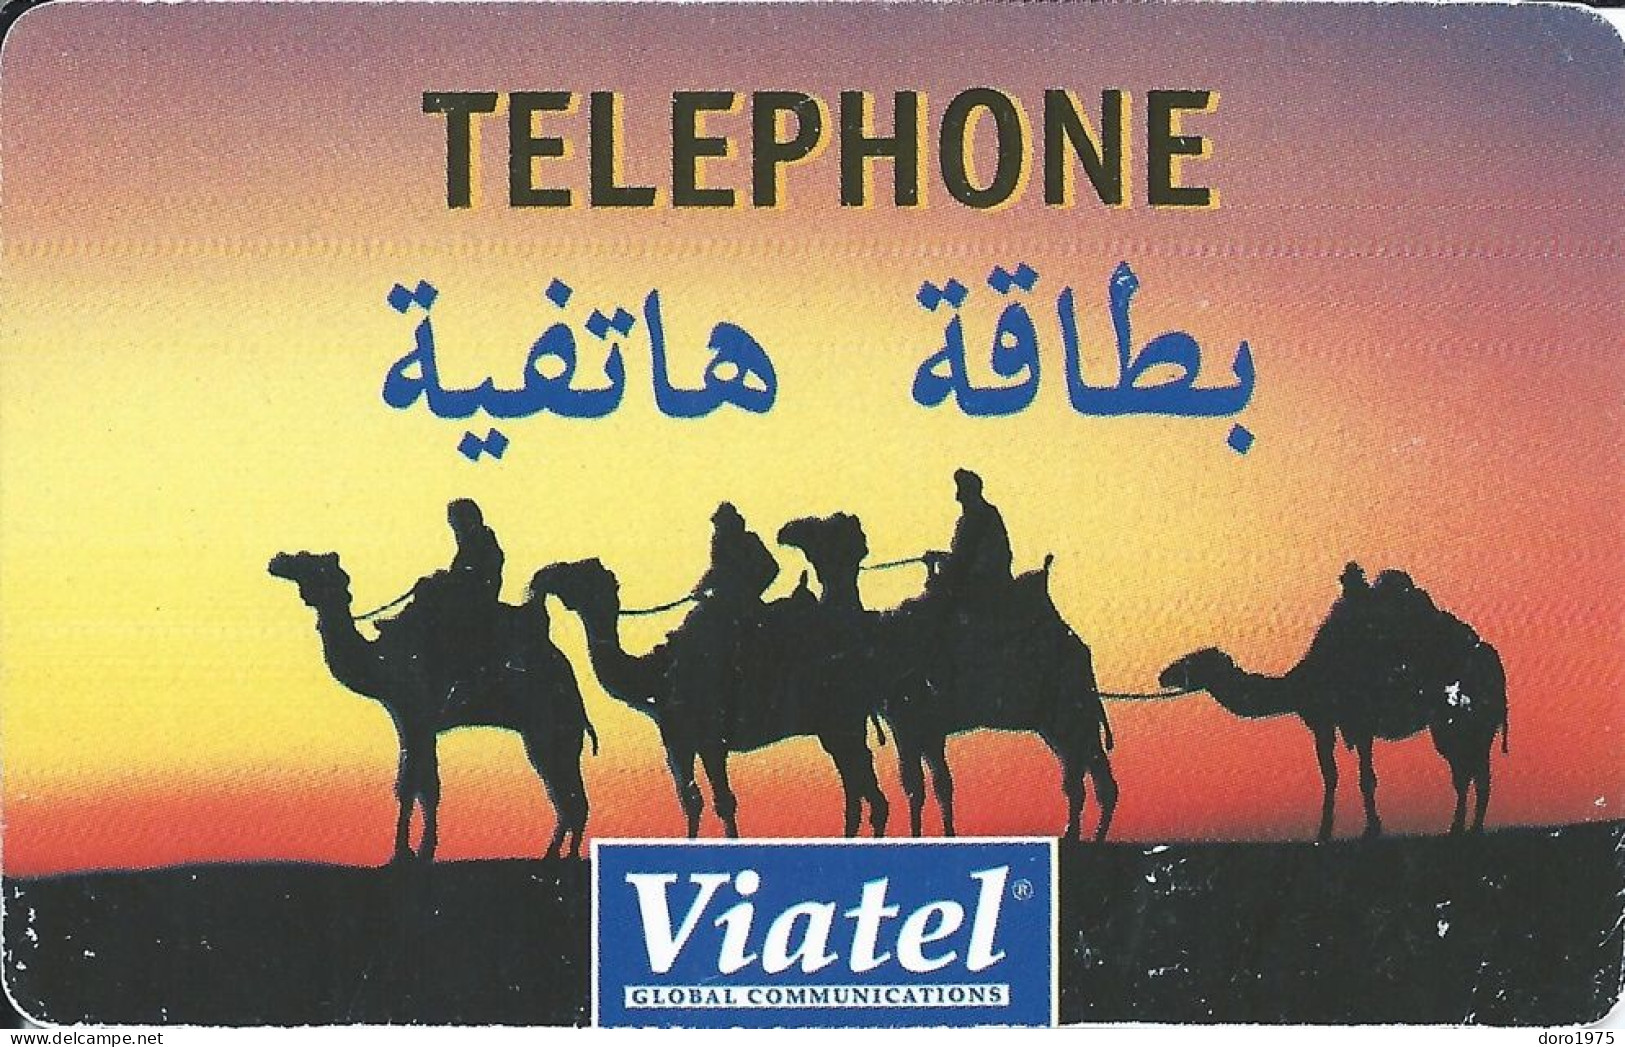 BELGIUM - Viatel - Camels At Sunset - Used - Cartes GSM, Recharges & Prépayées